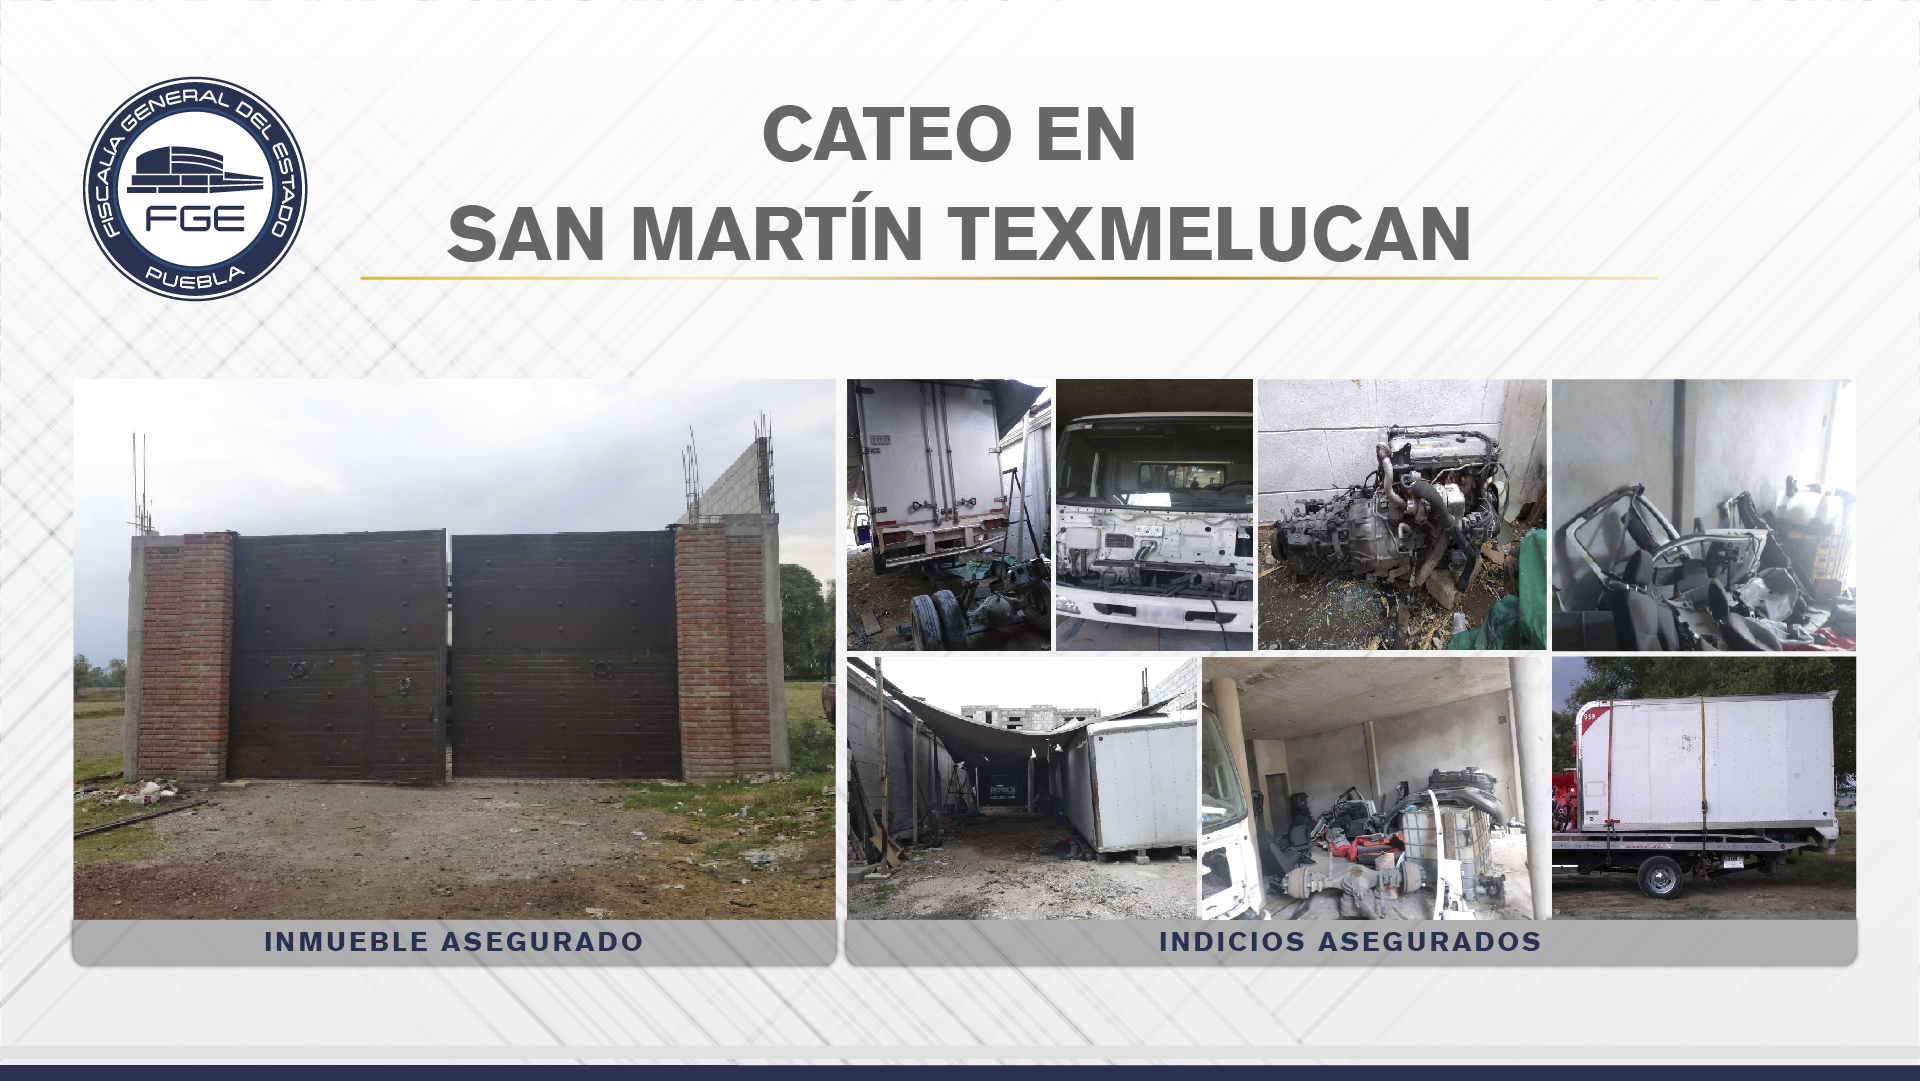 En San Martín, Fiscalía cateó inmueble con autopartes robadas